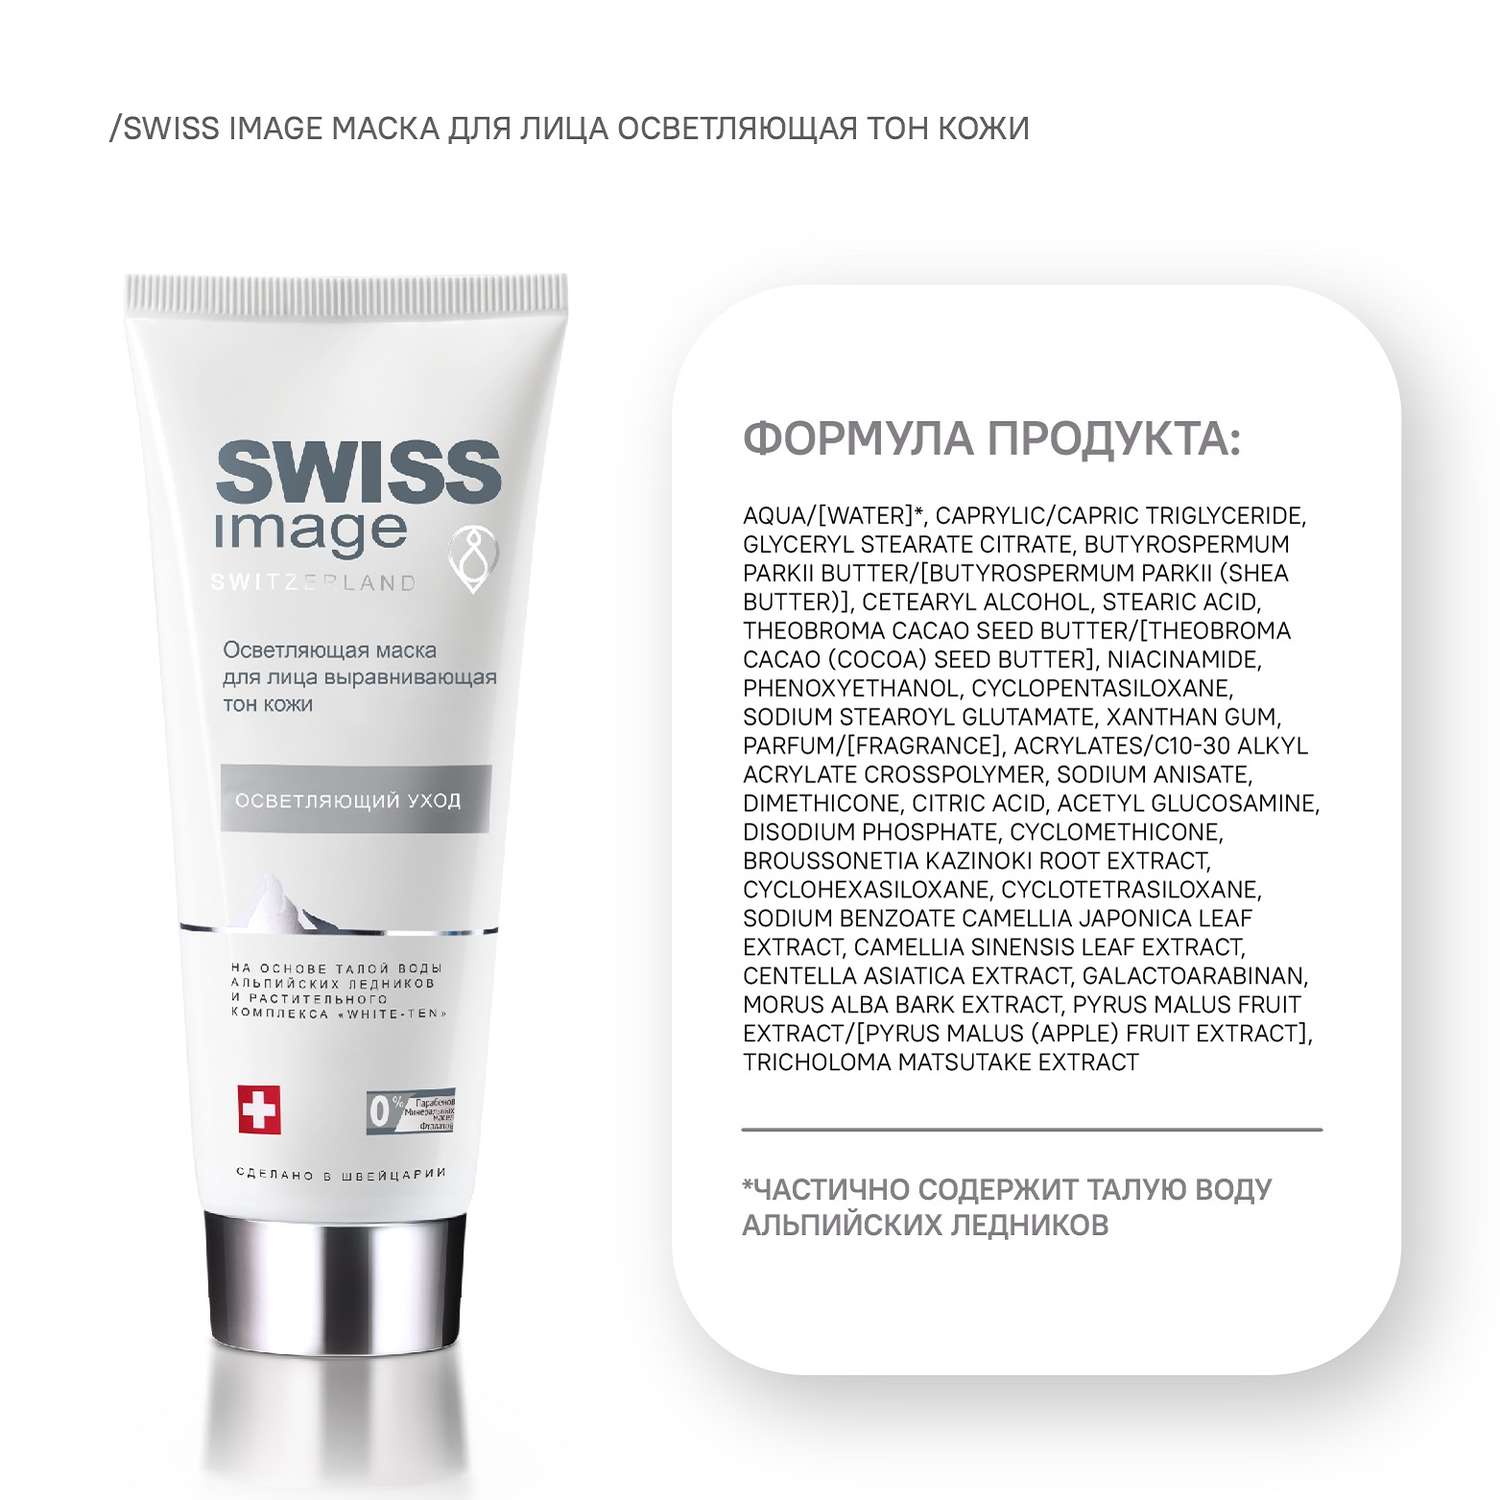 Осветляющая маска Swiss image для лица выравнивающая тон кожи 75 мл - фото 8